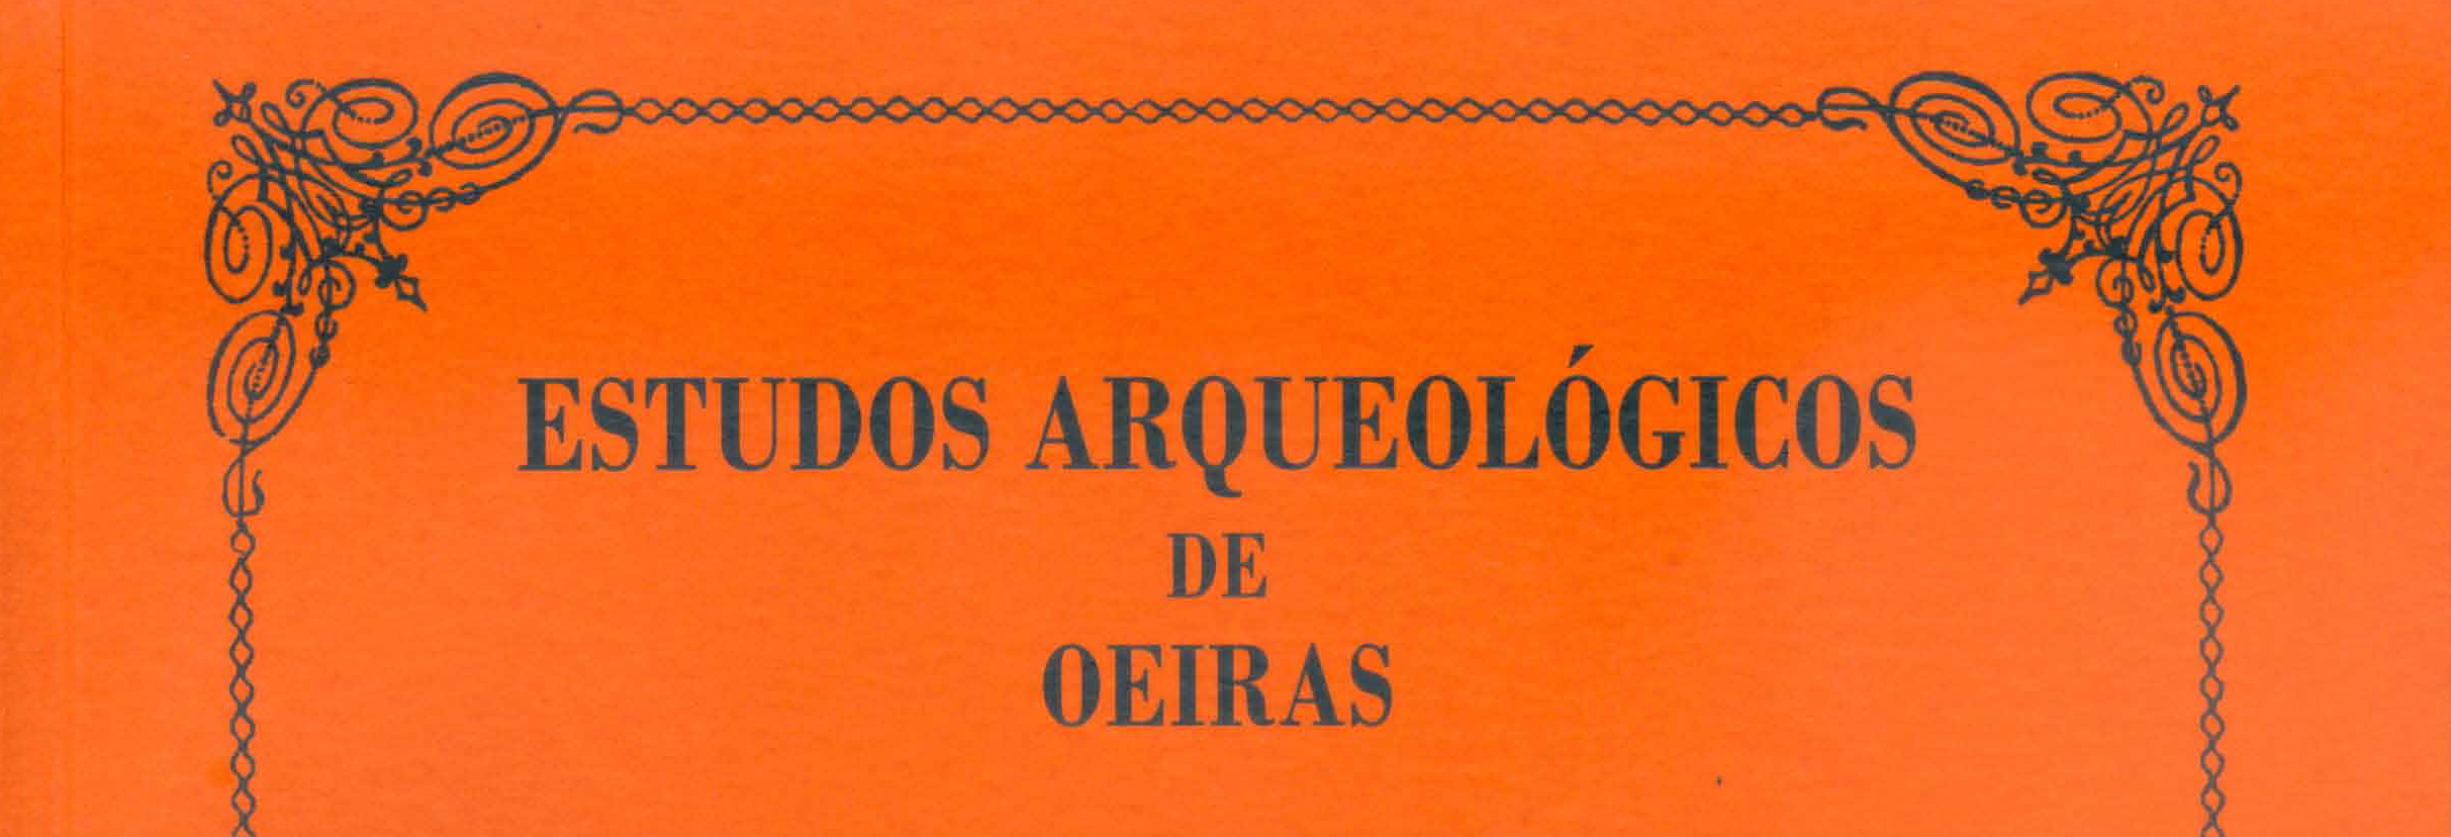 Estudos Arqueológicos de Oeiras, 27